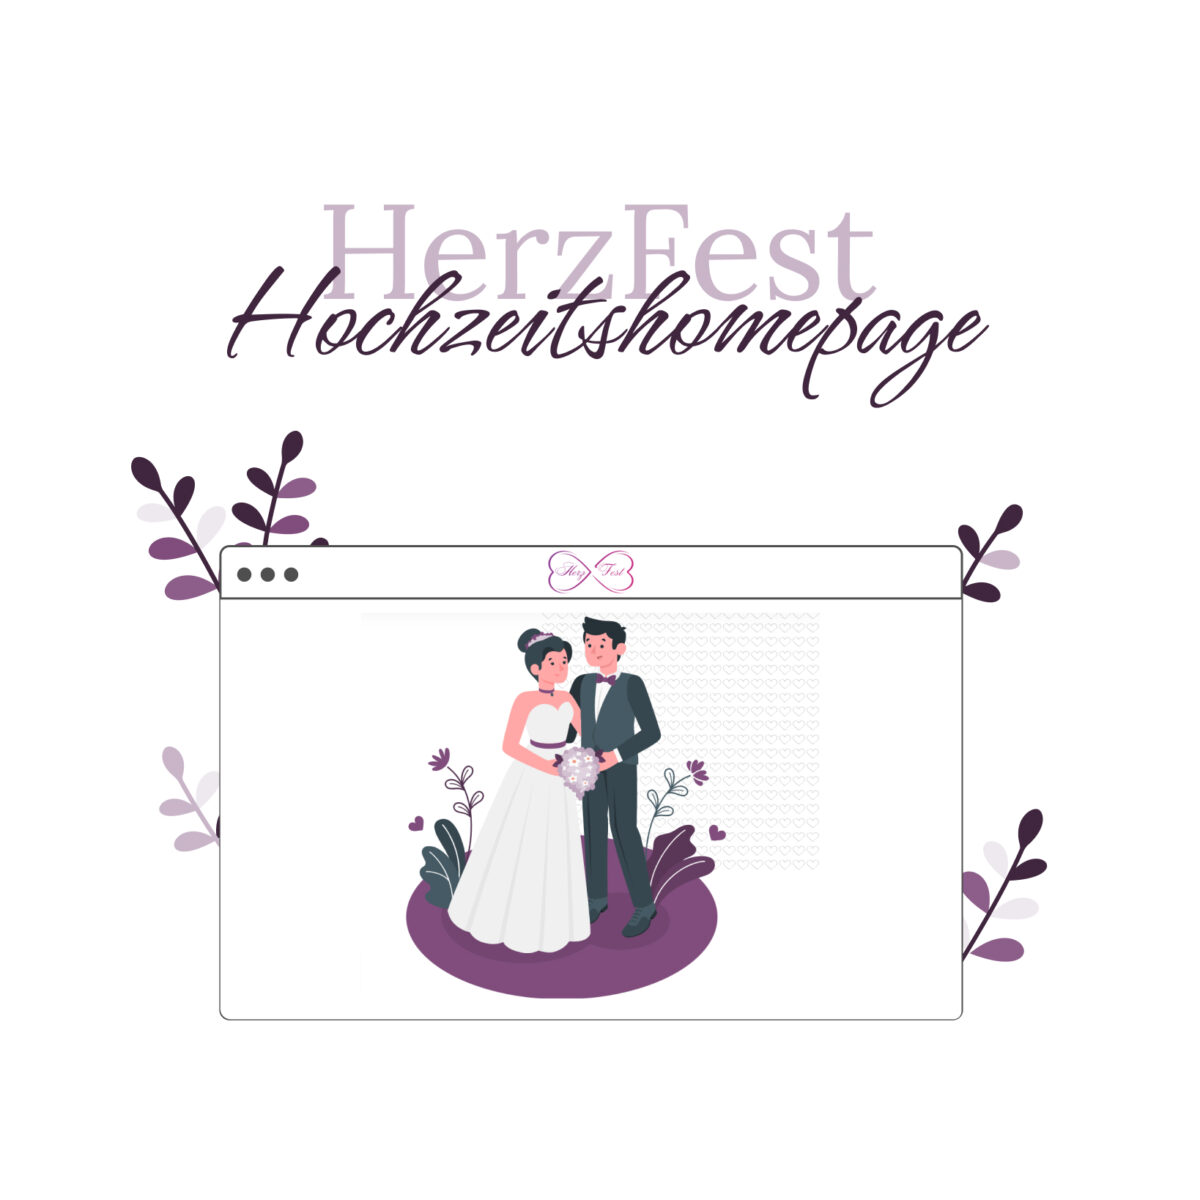 Herzfest, Hochzeitsplanung, Online, Hochzeitshomepage, Taucha, Leipzig, Hochzeitsmesse